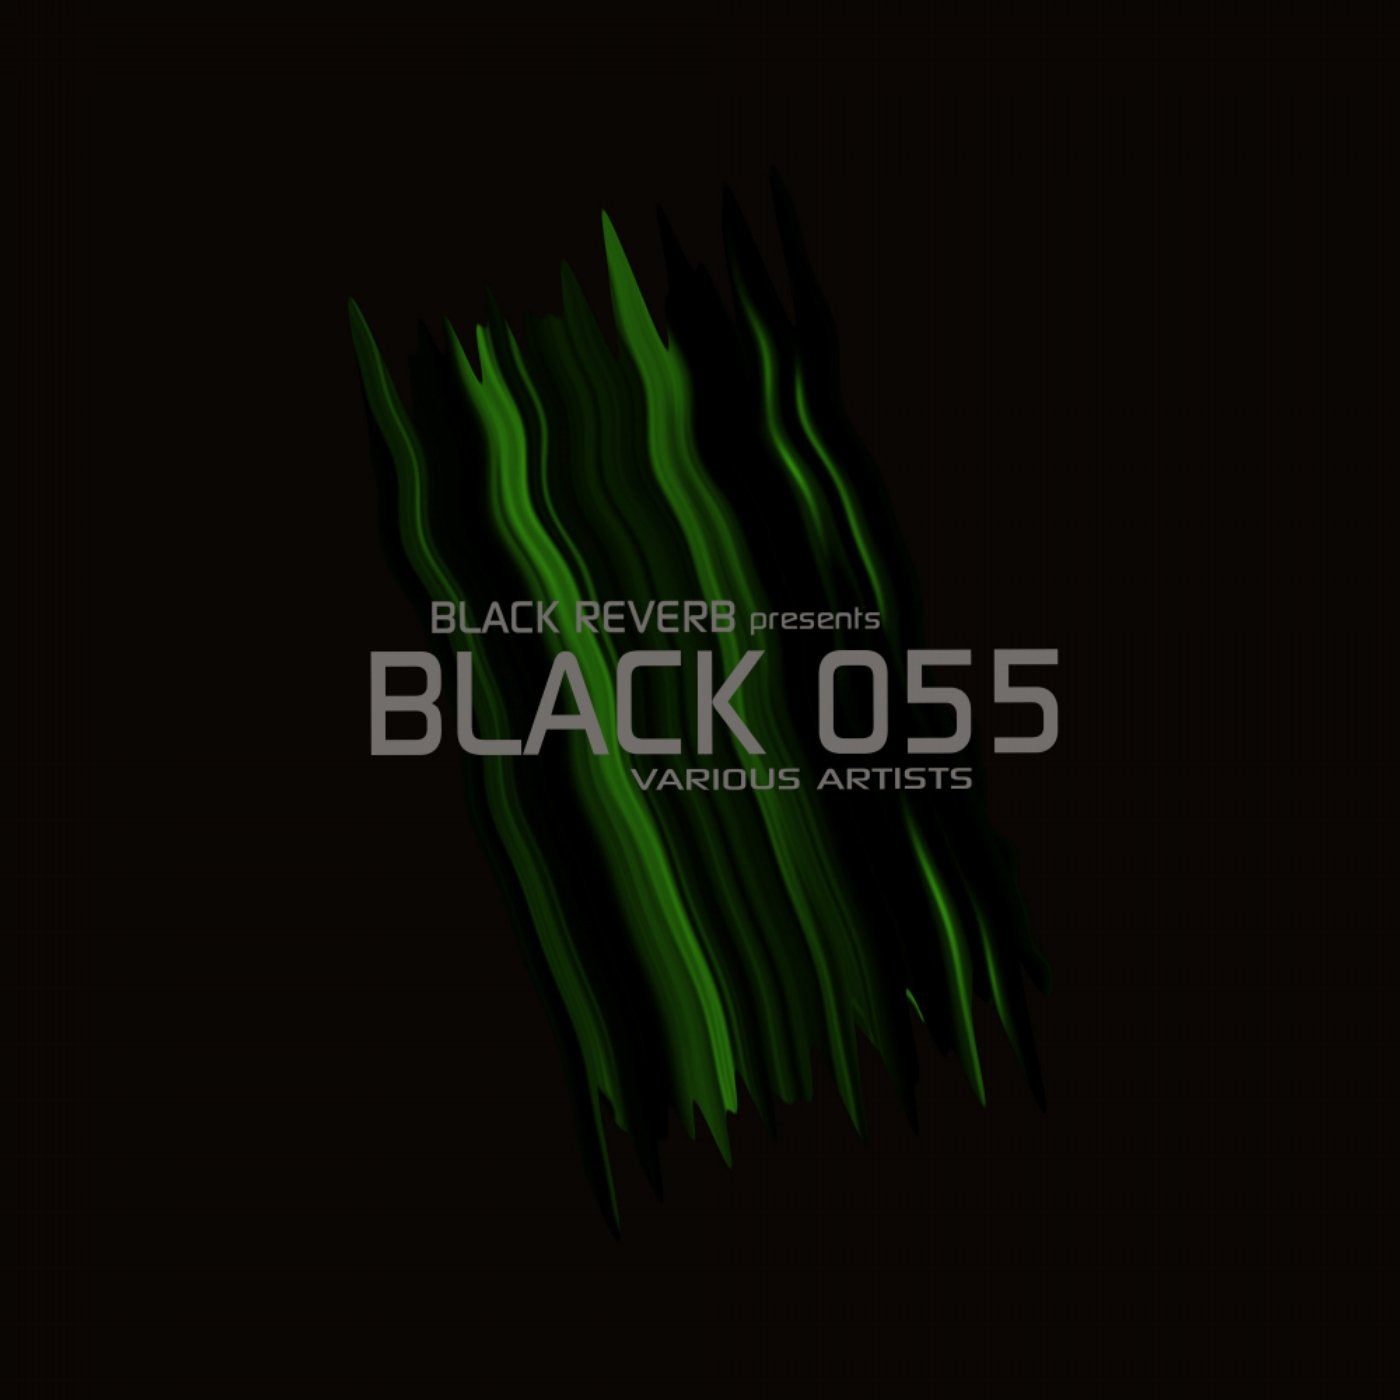 Black 055